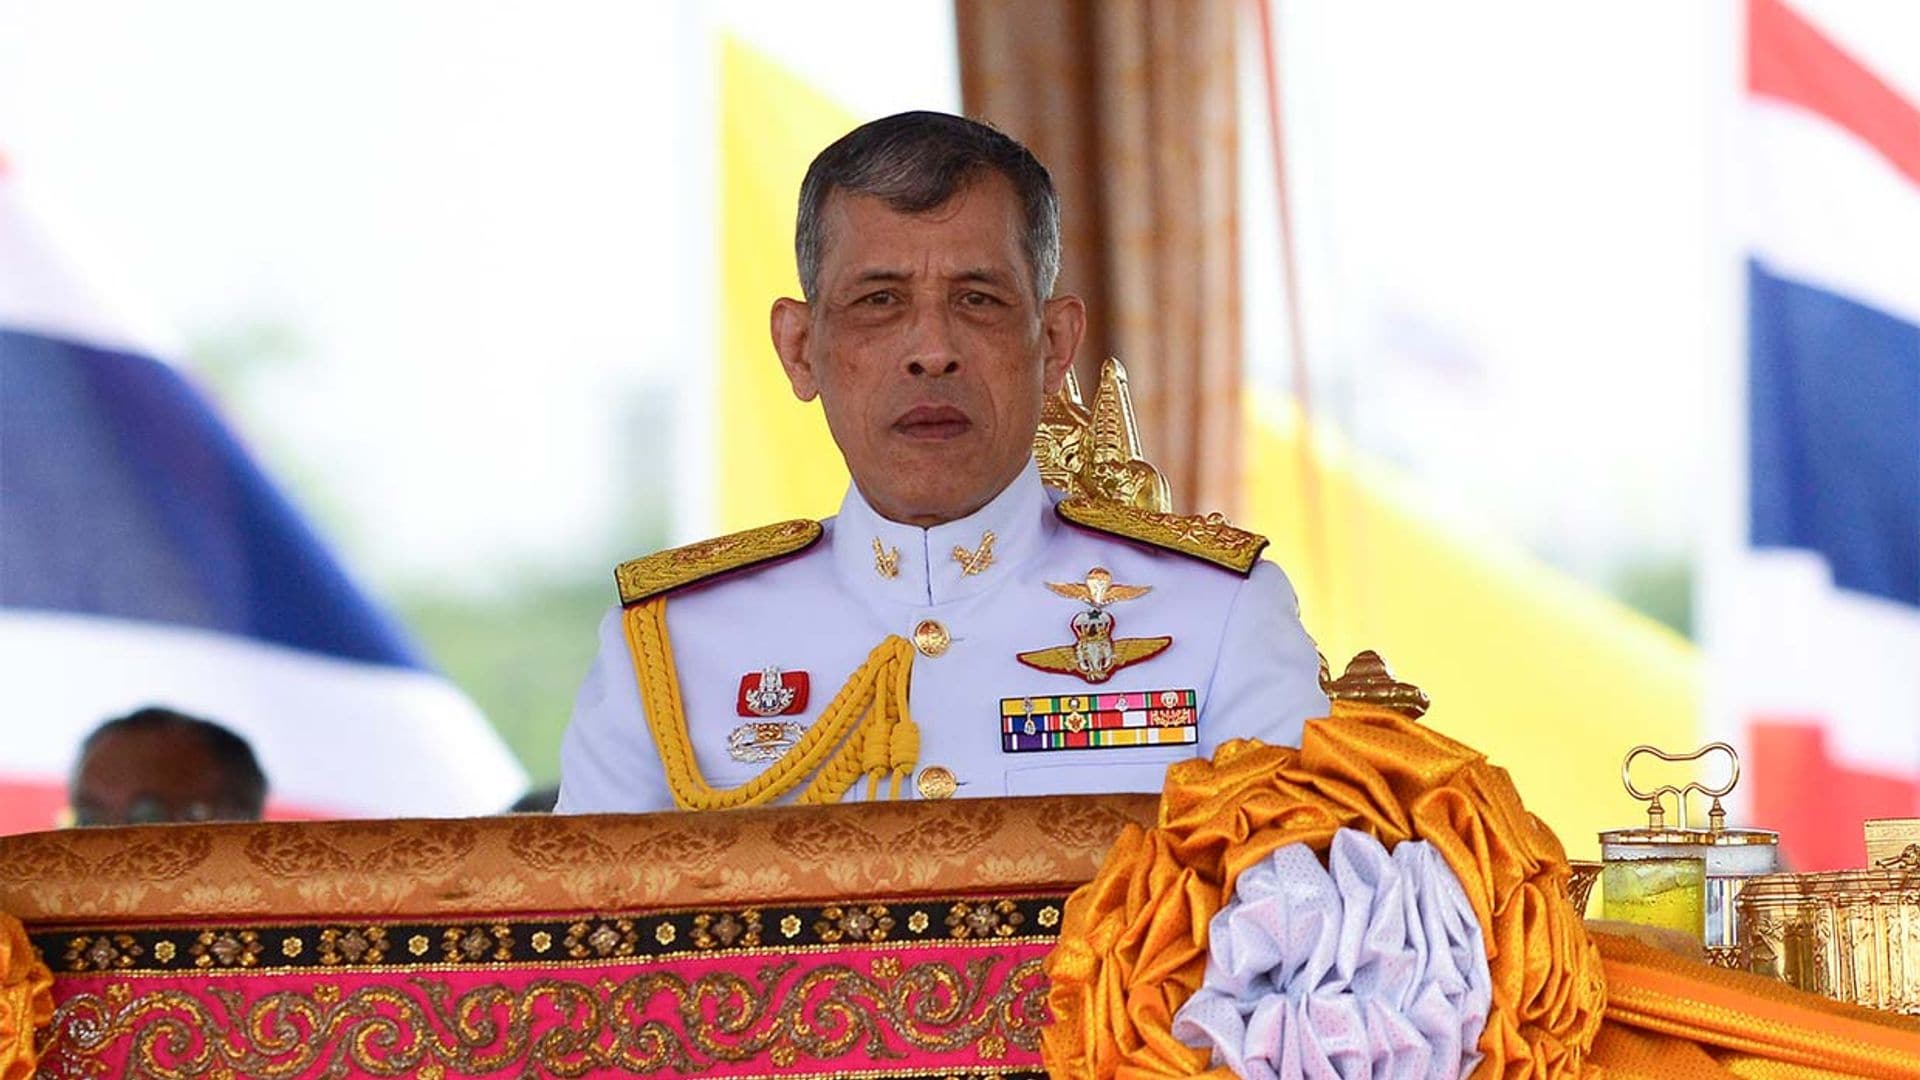 Tras la polémica, el rey de Tailandia abandona Alemania y regresa a su país